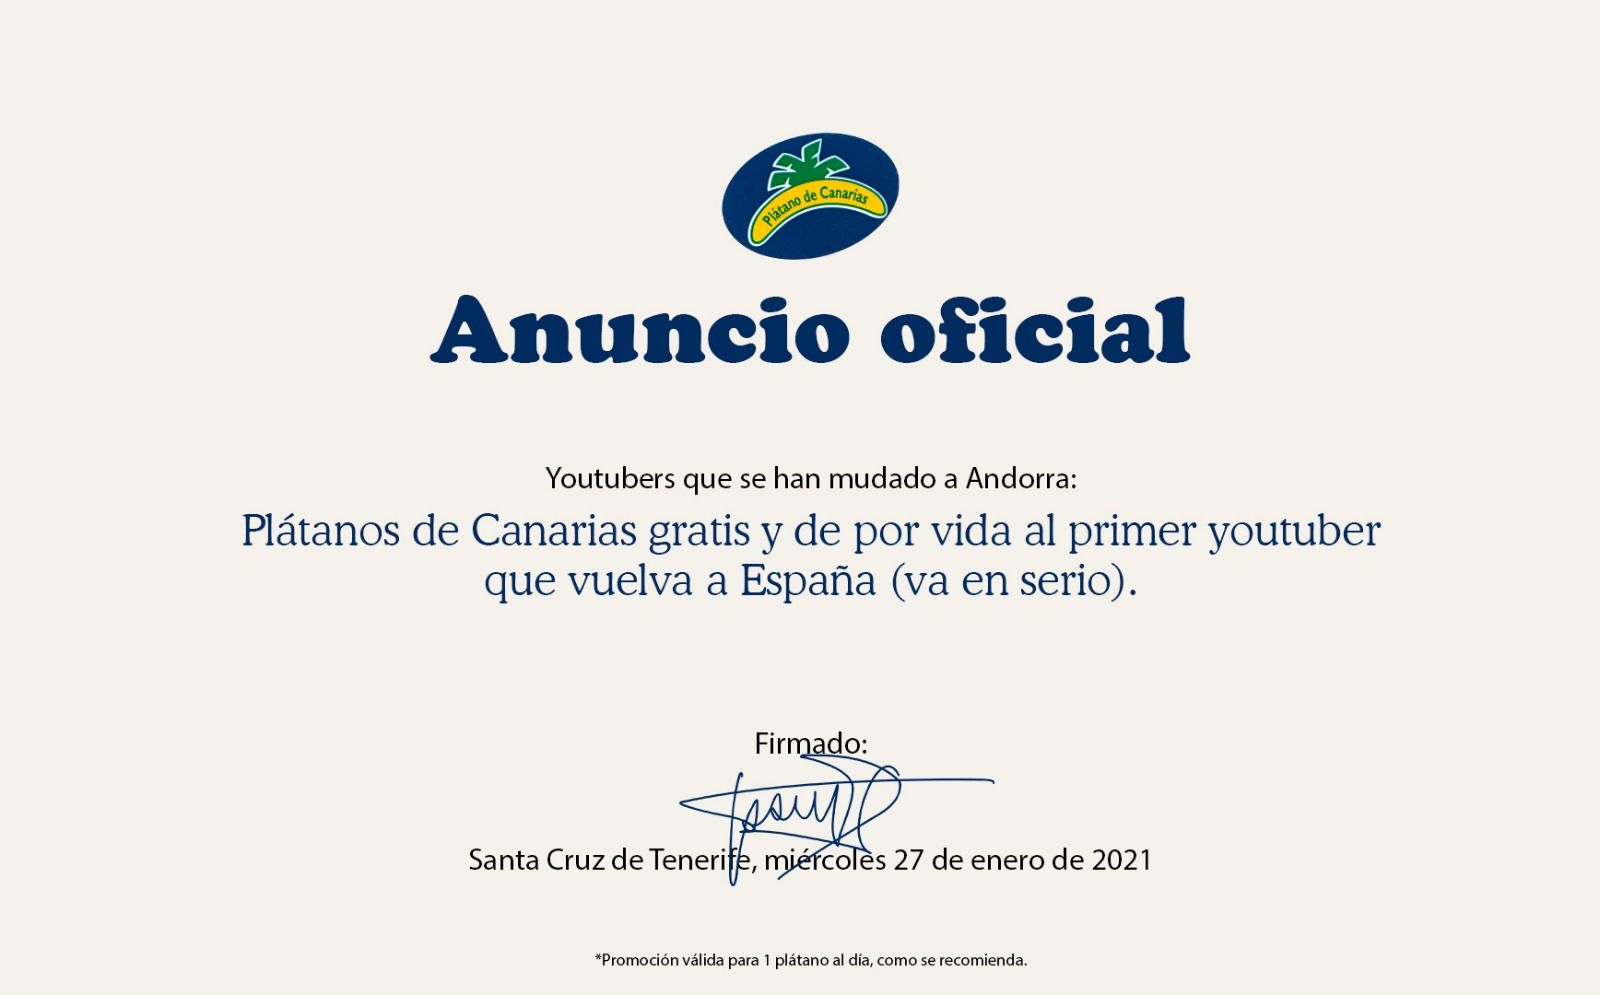 Imagen de la campaña de Plátano de Canarias.